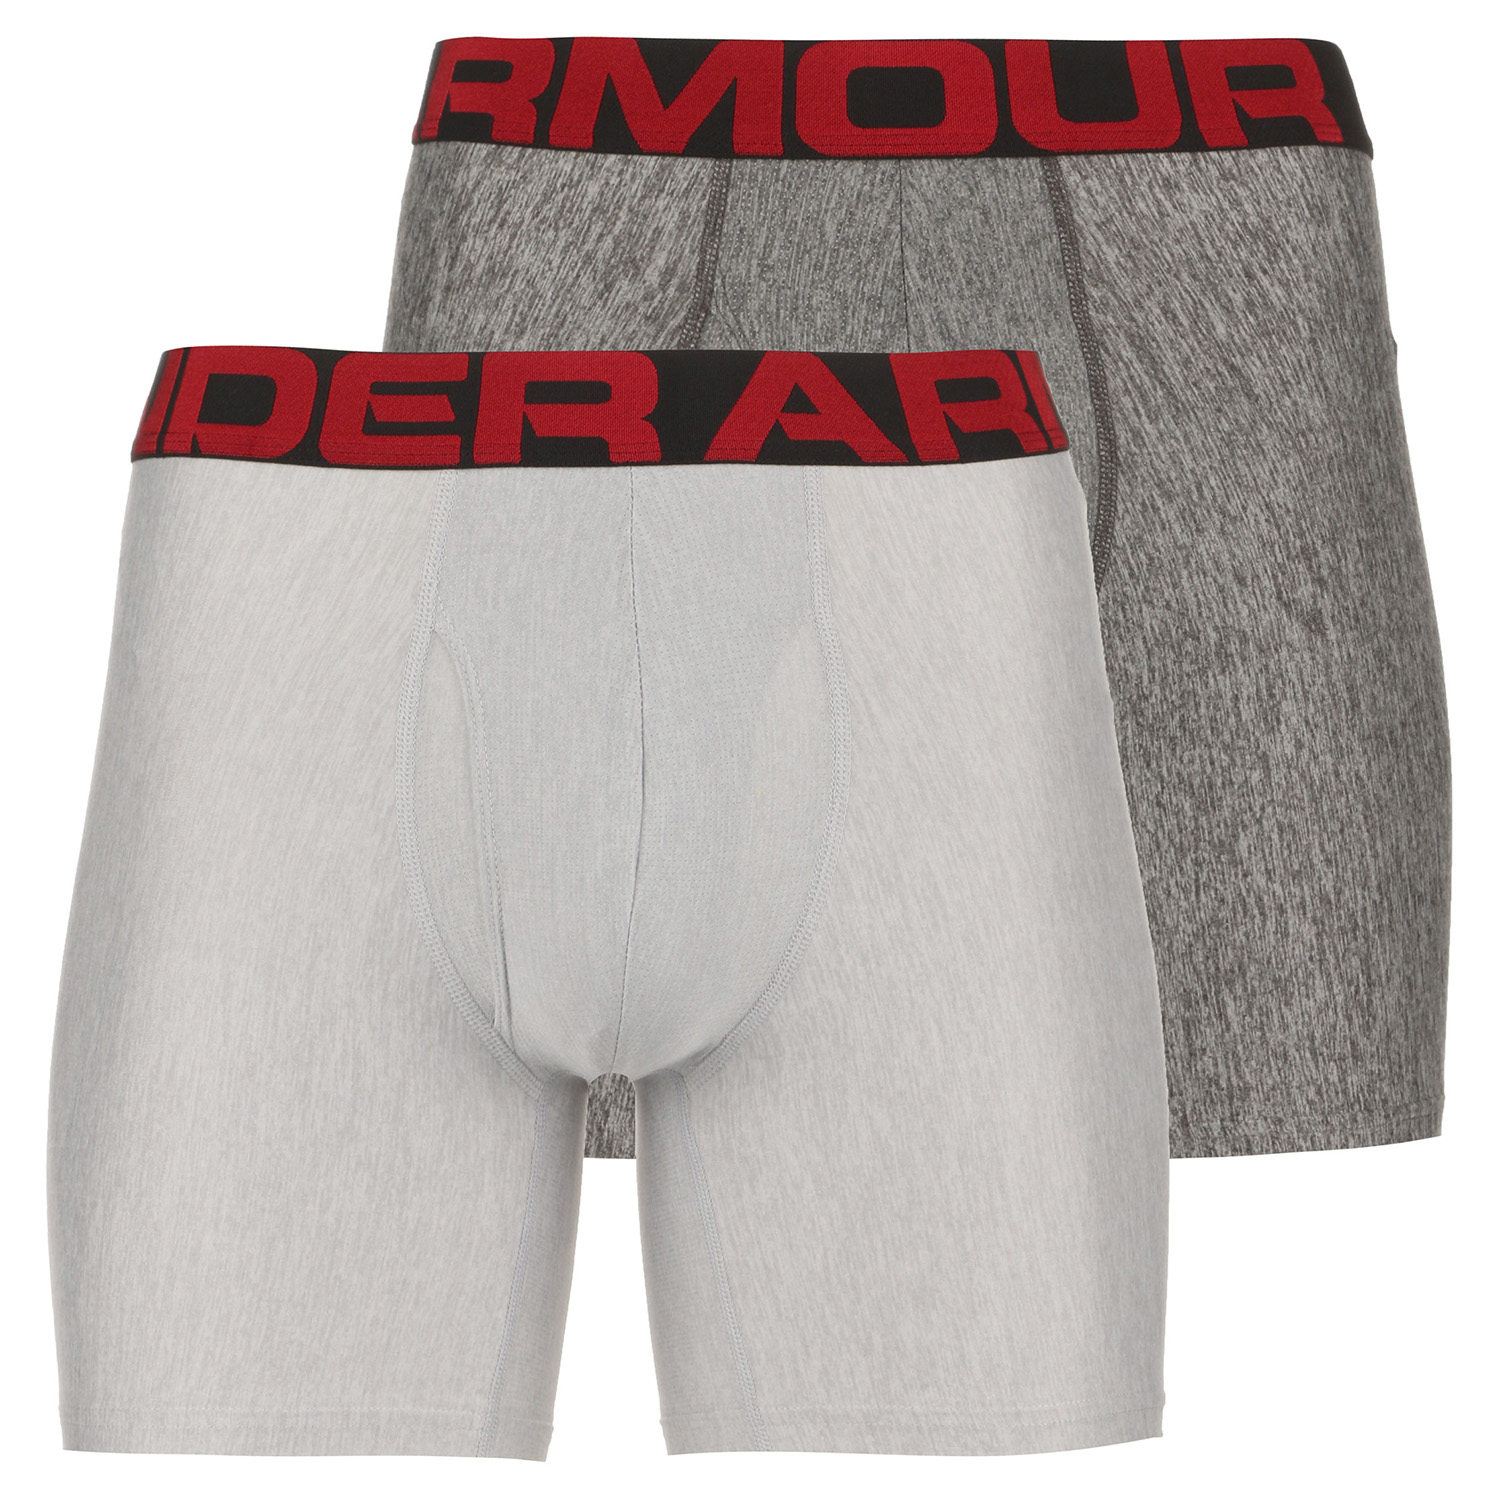 Under Armour Boxerjock 6 Zoll Boxershort 2 er Pack Herren Unterhose Shorts von Under Armour